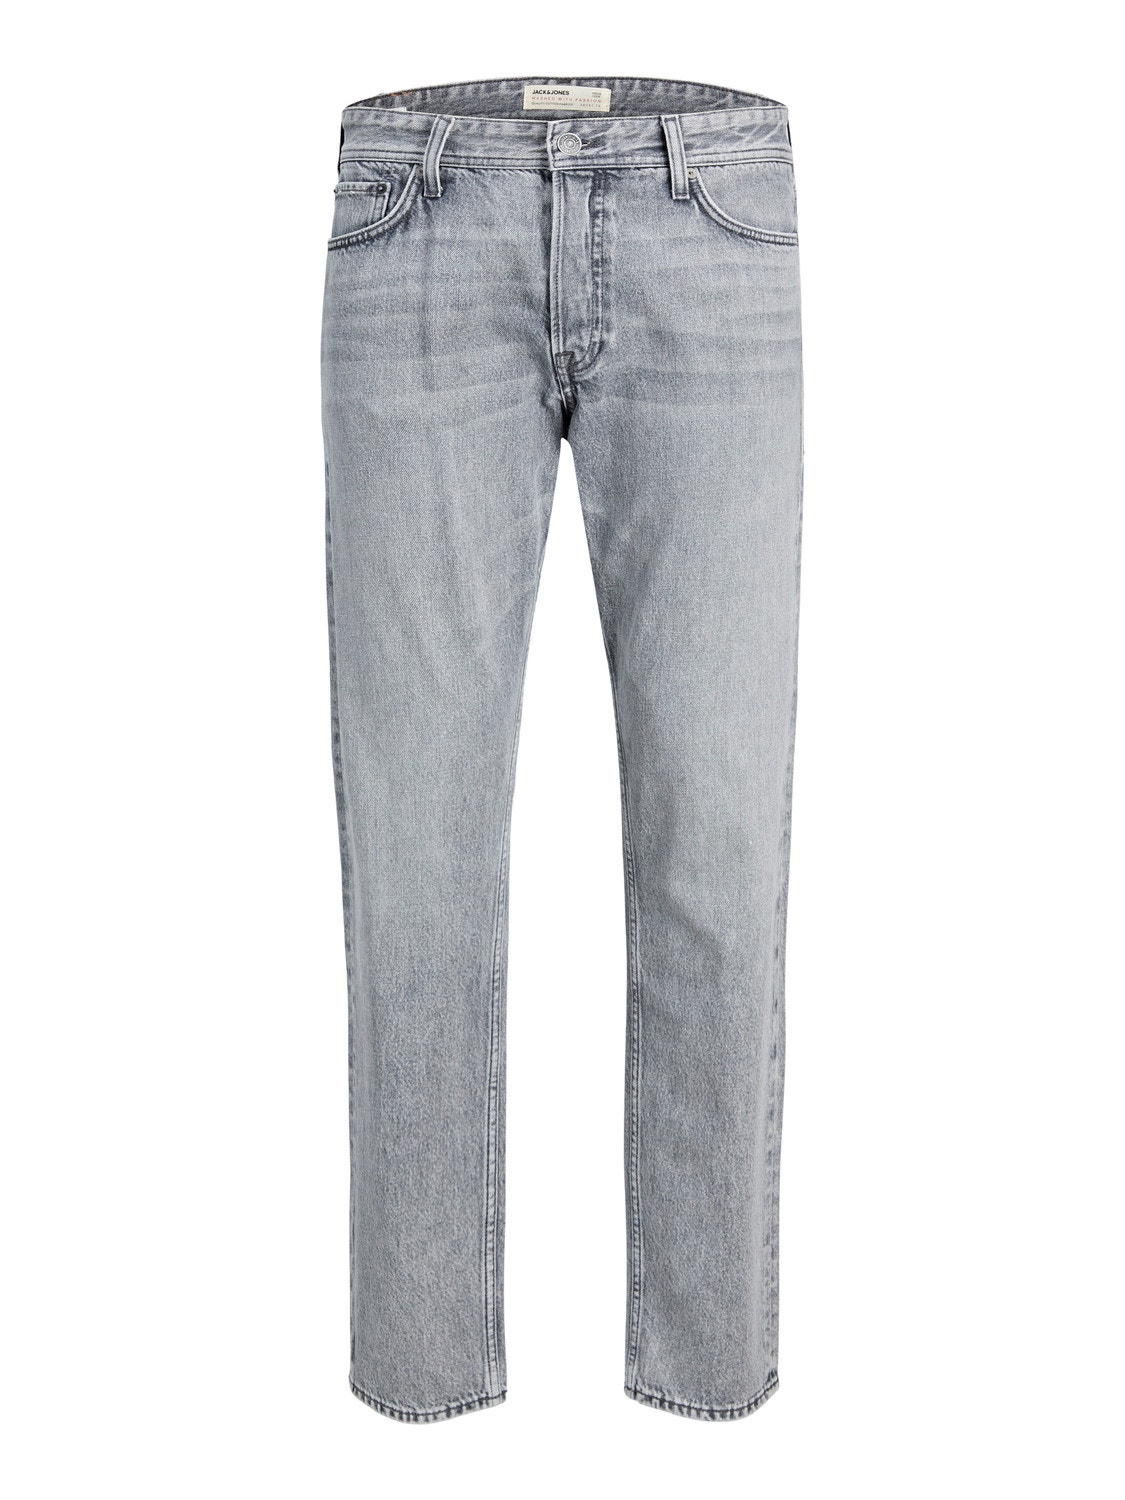 Jack & Jones JJIMIKE JJORIGINAL CJ 020 Jeans Tapered Fit -Grey Denim - 12244964